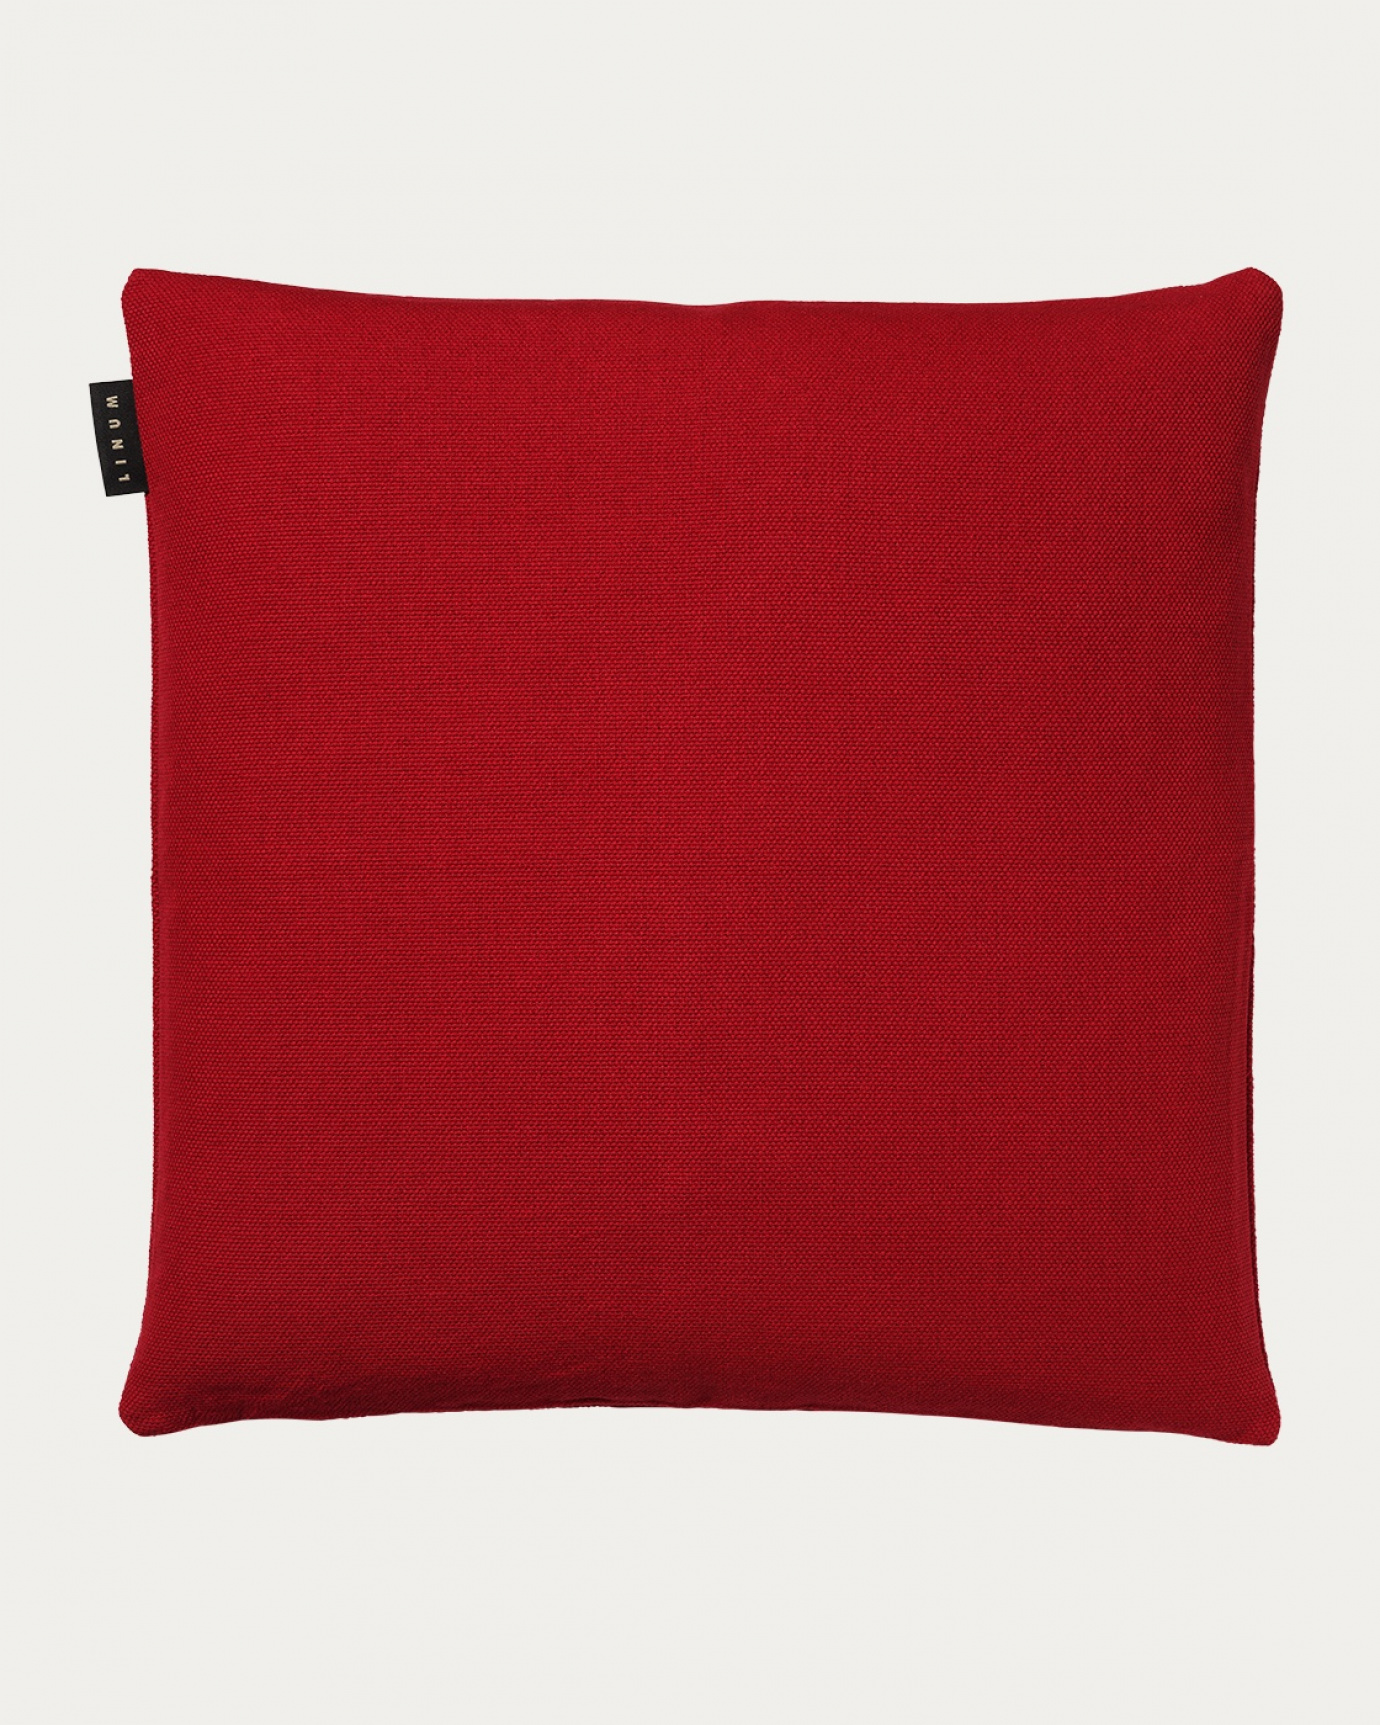 Produktbild rot PEPPER Kissenhülle aus weicher Baumwolle von LINUM DESIGN. Einfach zu waschen und langlebig für Generationen. Größe 60x60 cm.